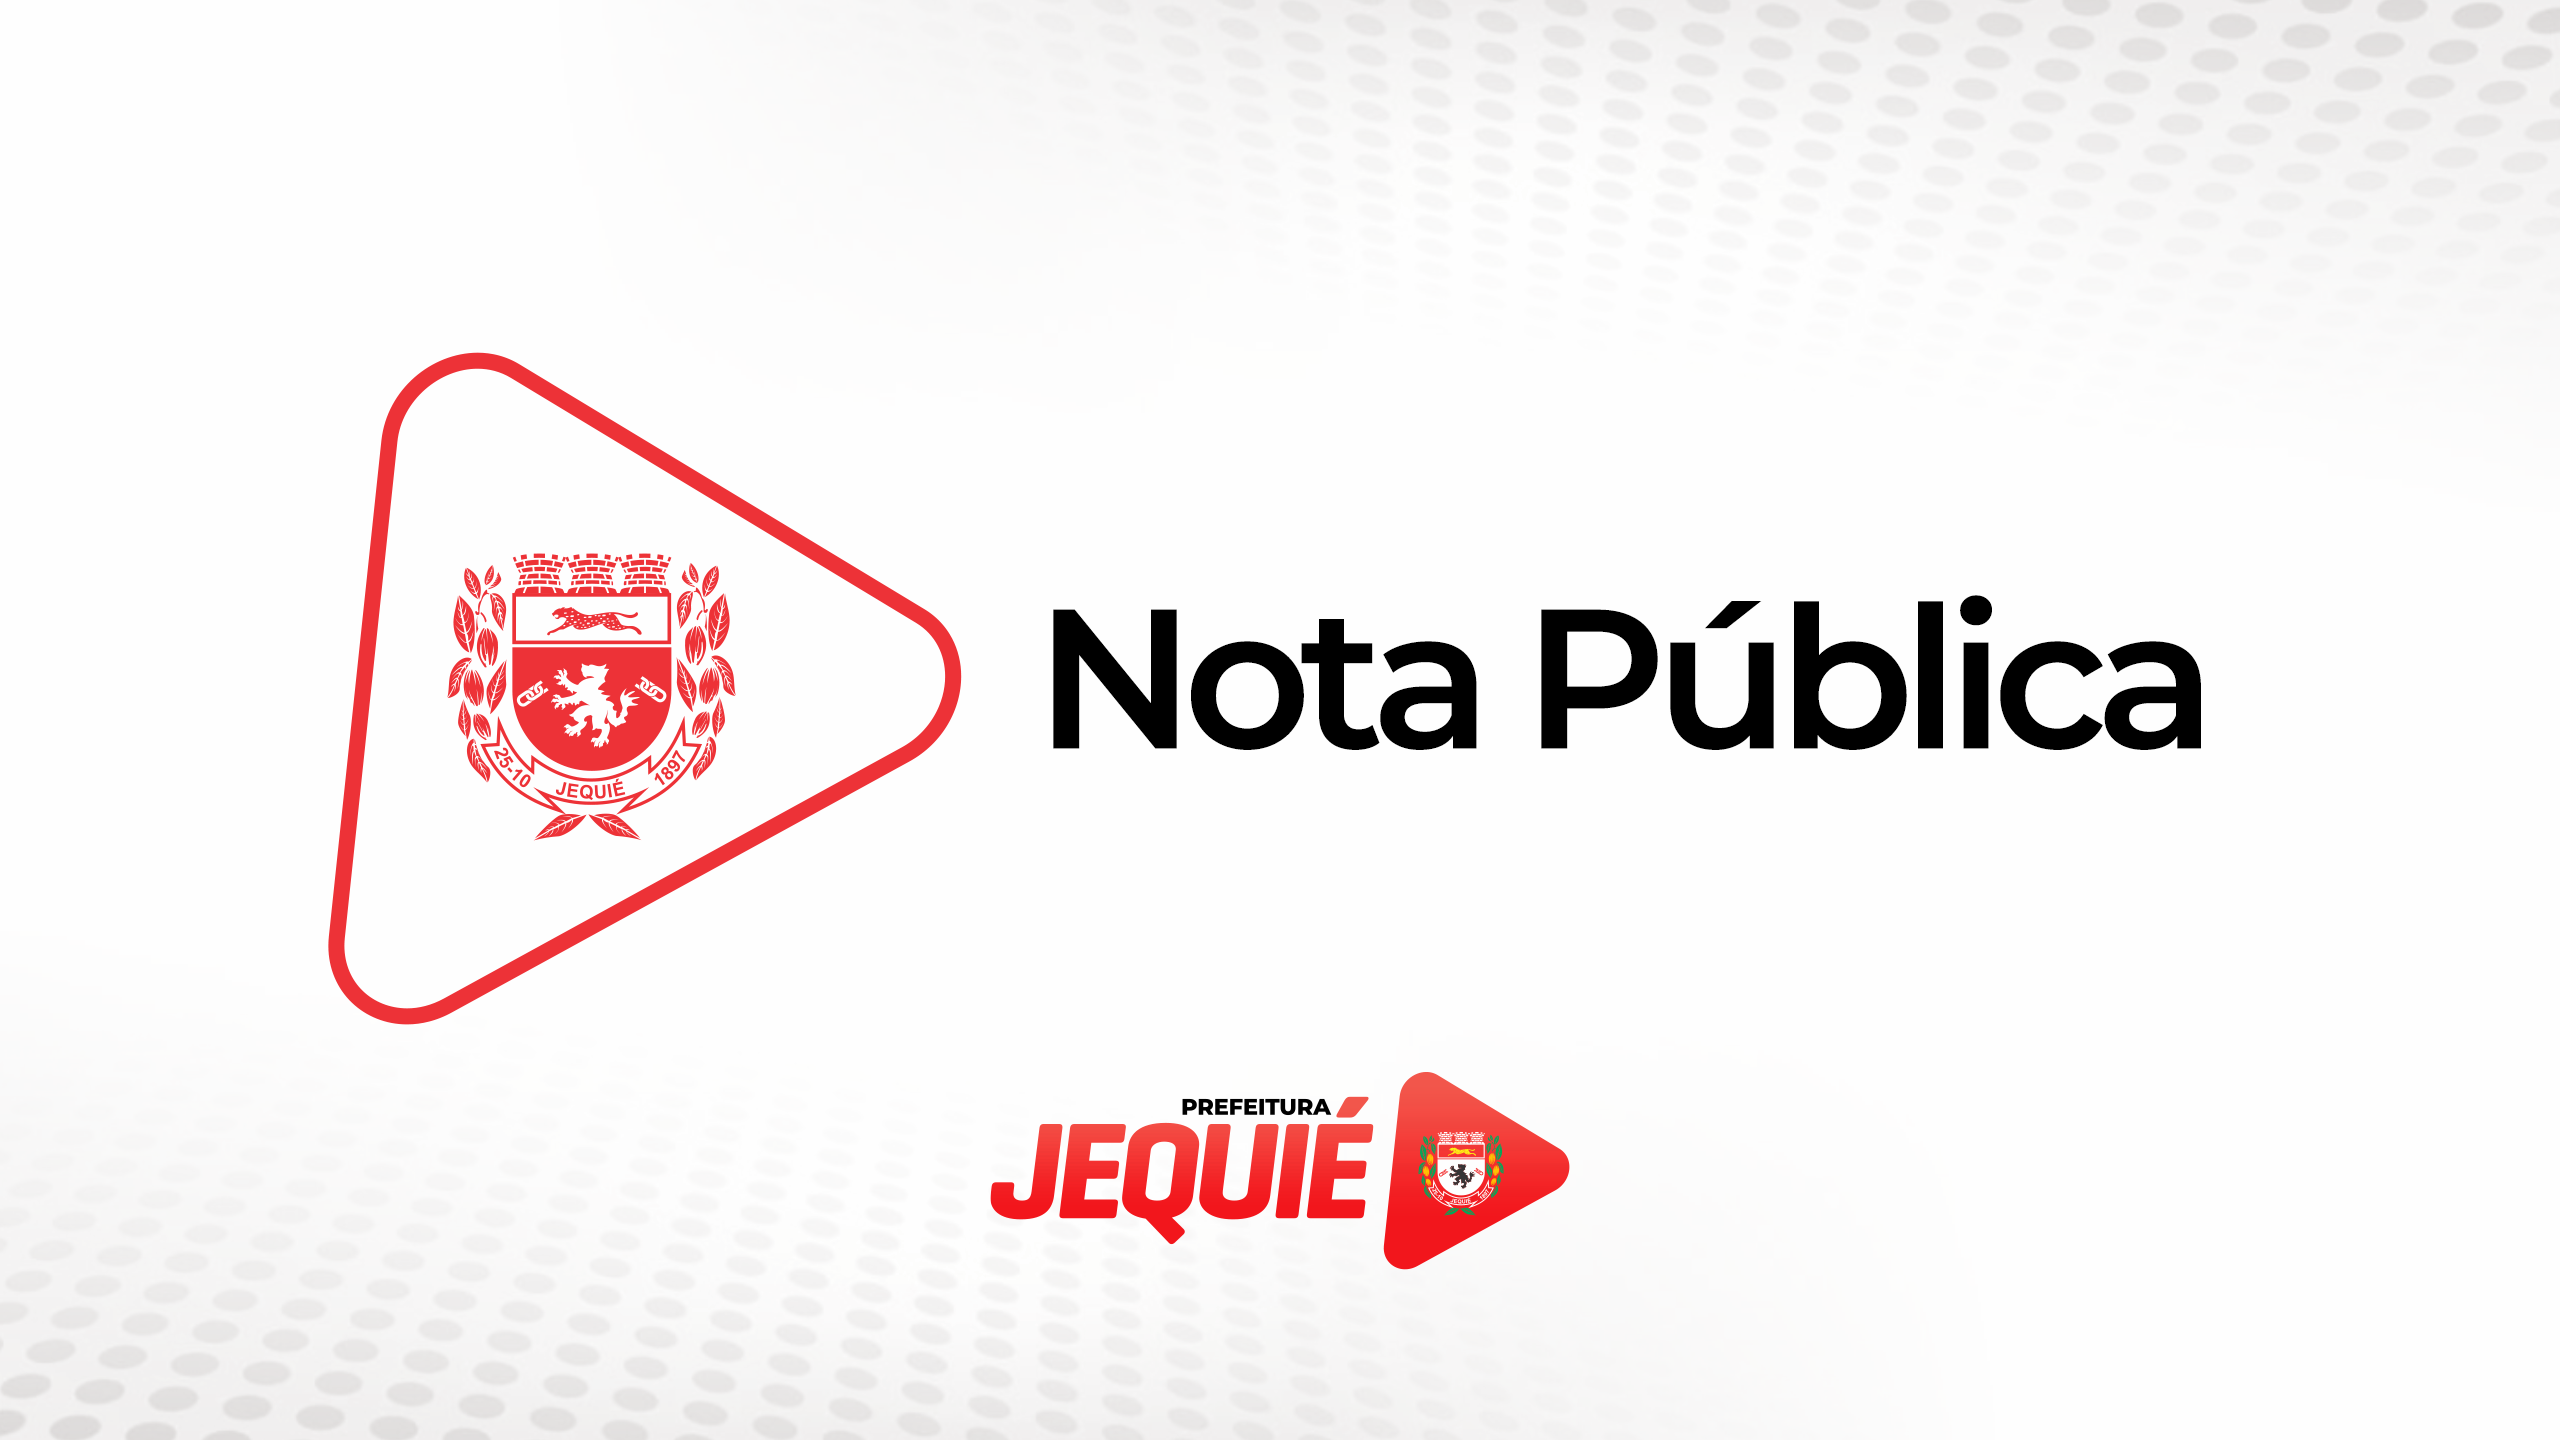 A Prefeitura de Jequié publica Nota Pública em relação a vídeo de guarda municipal que circula nas redes sociais